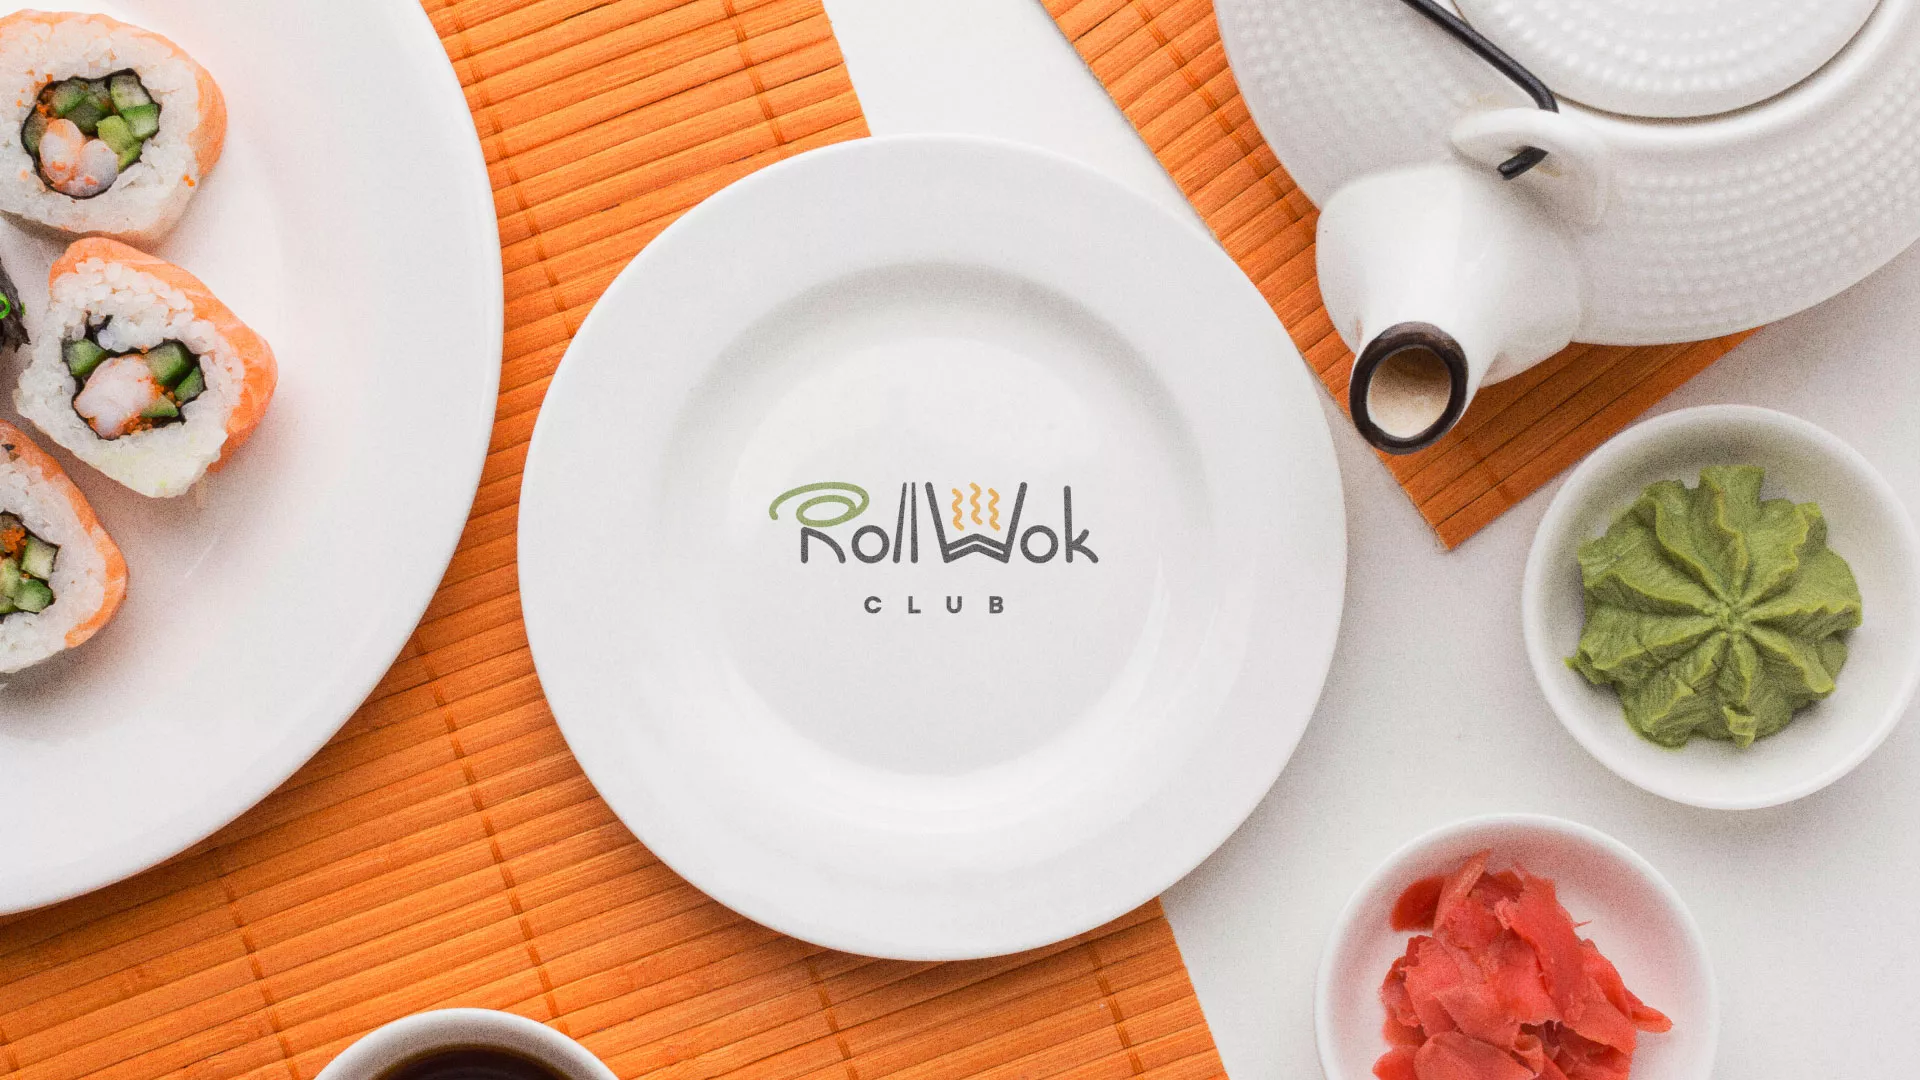 Разработка логотипа и фирменного стиля суши-бара «Roll Wok Club» в Кропоткине